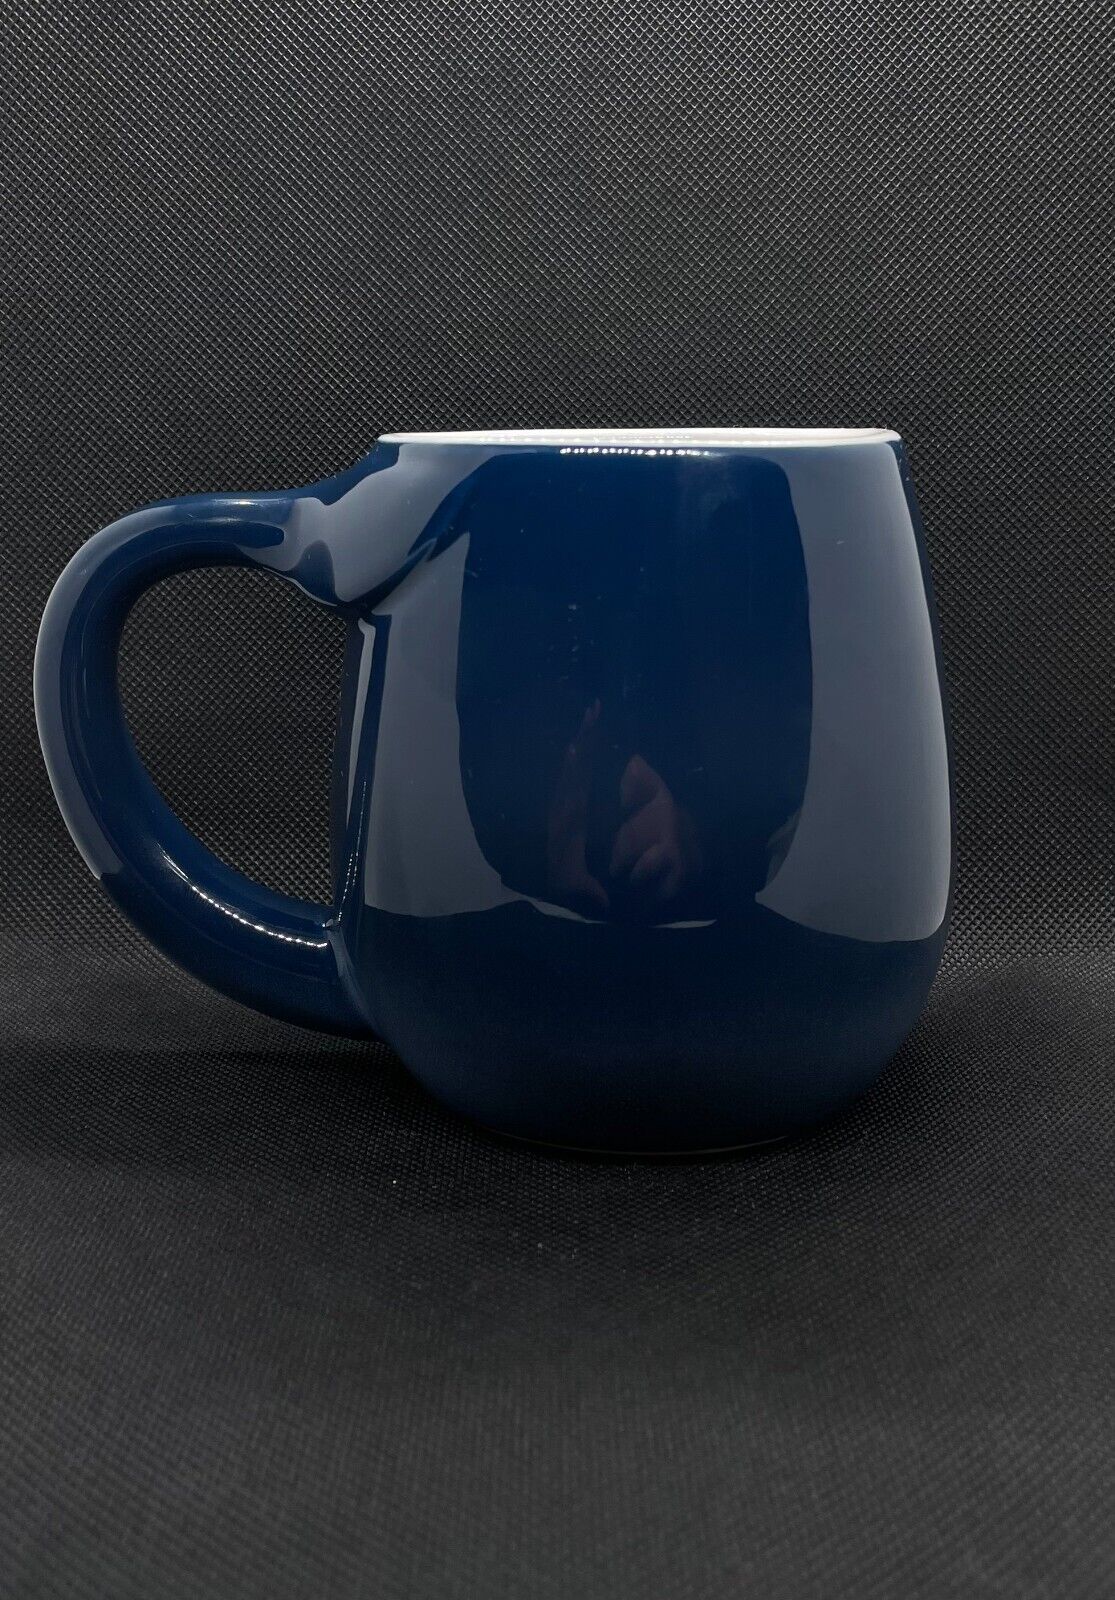 Vintage Blue Nantucket Home Ceramic Mug. Microwave Safe and Dishwasher Safe